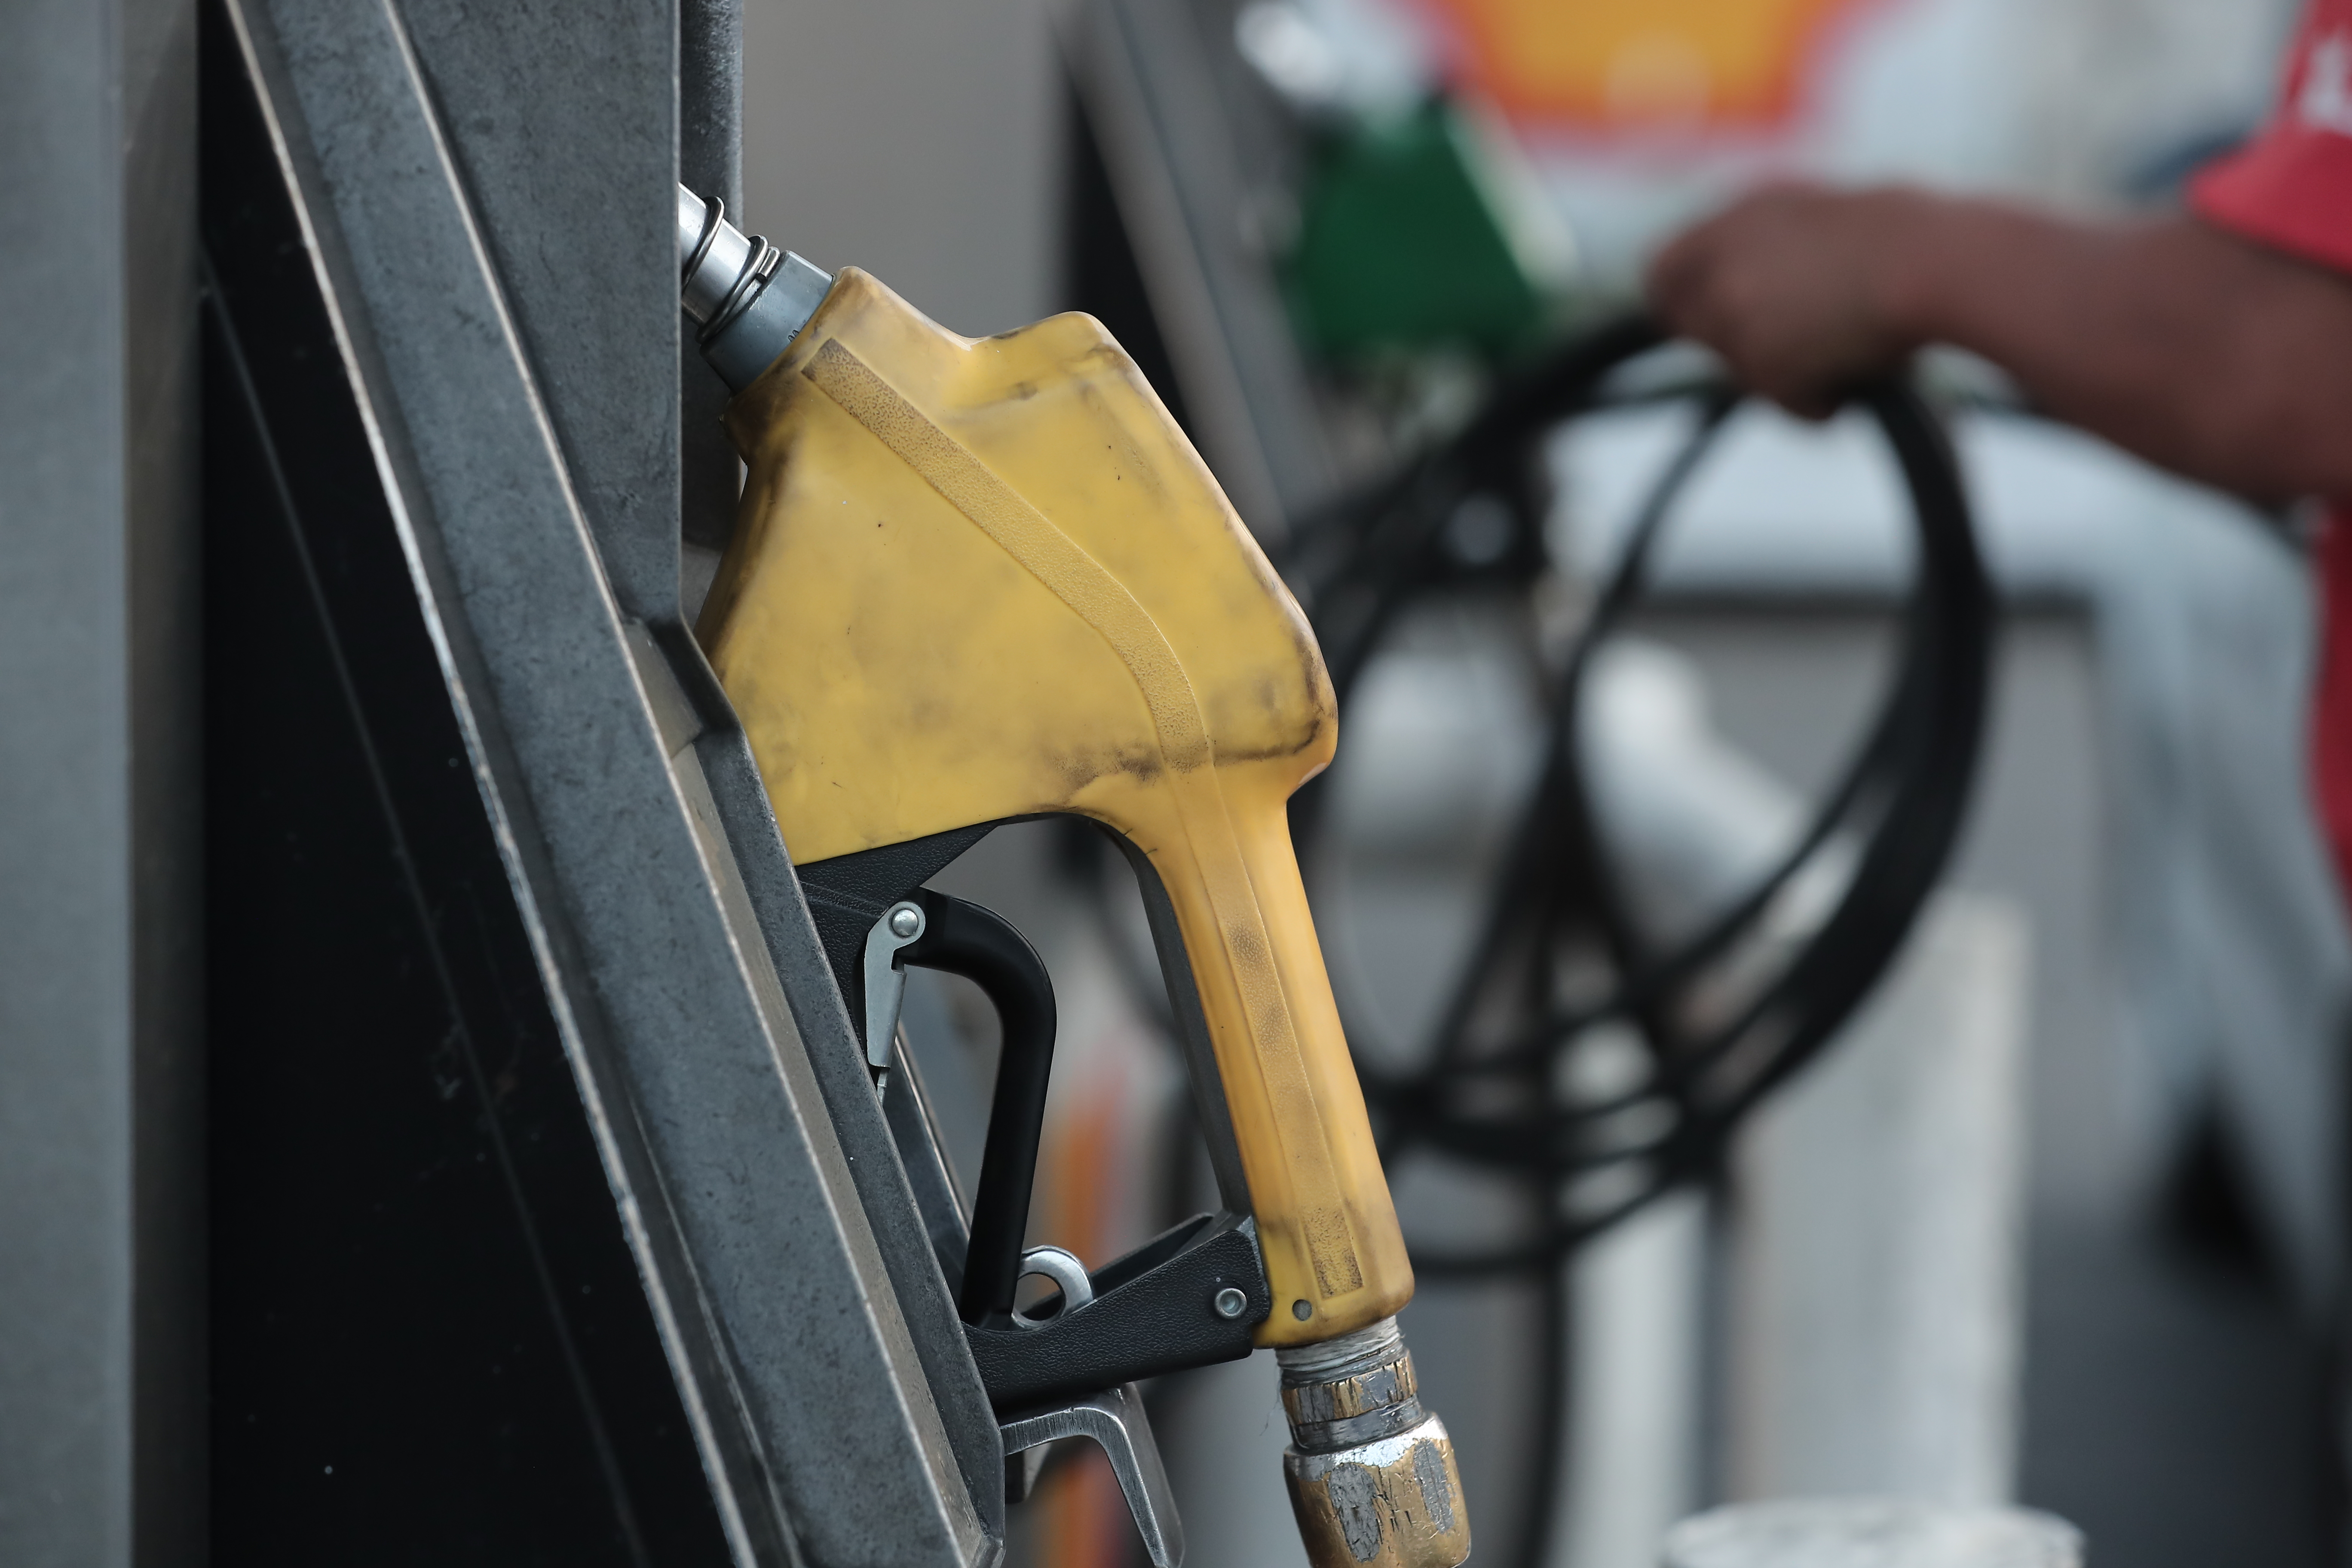 Por tercera semana consecutiva los precios de los combustibles registraron movimiento alcista en el mercado. (Foto Prensa Libre: Hemeroteca) 